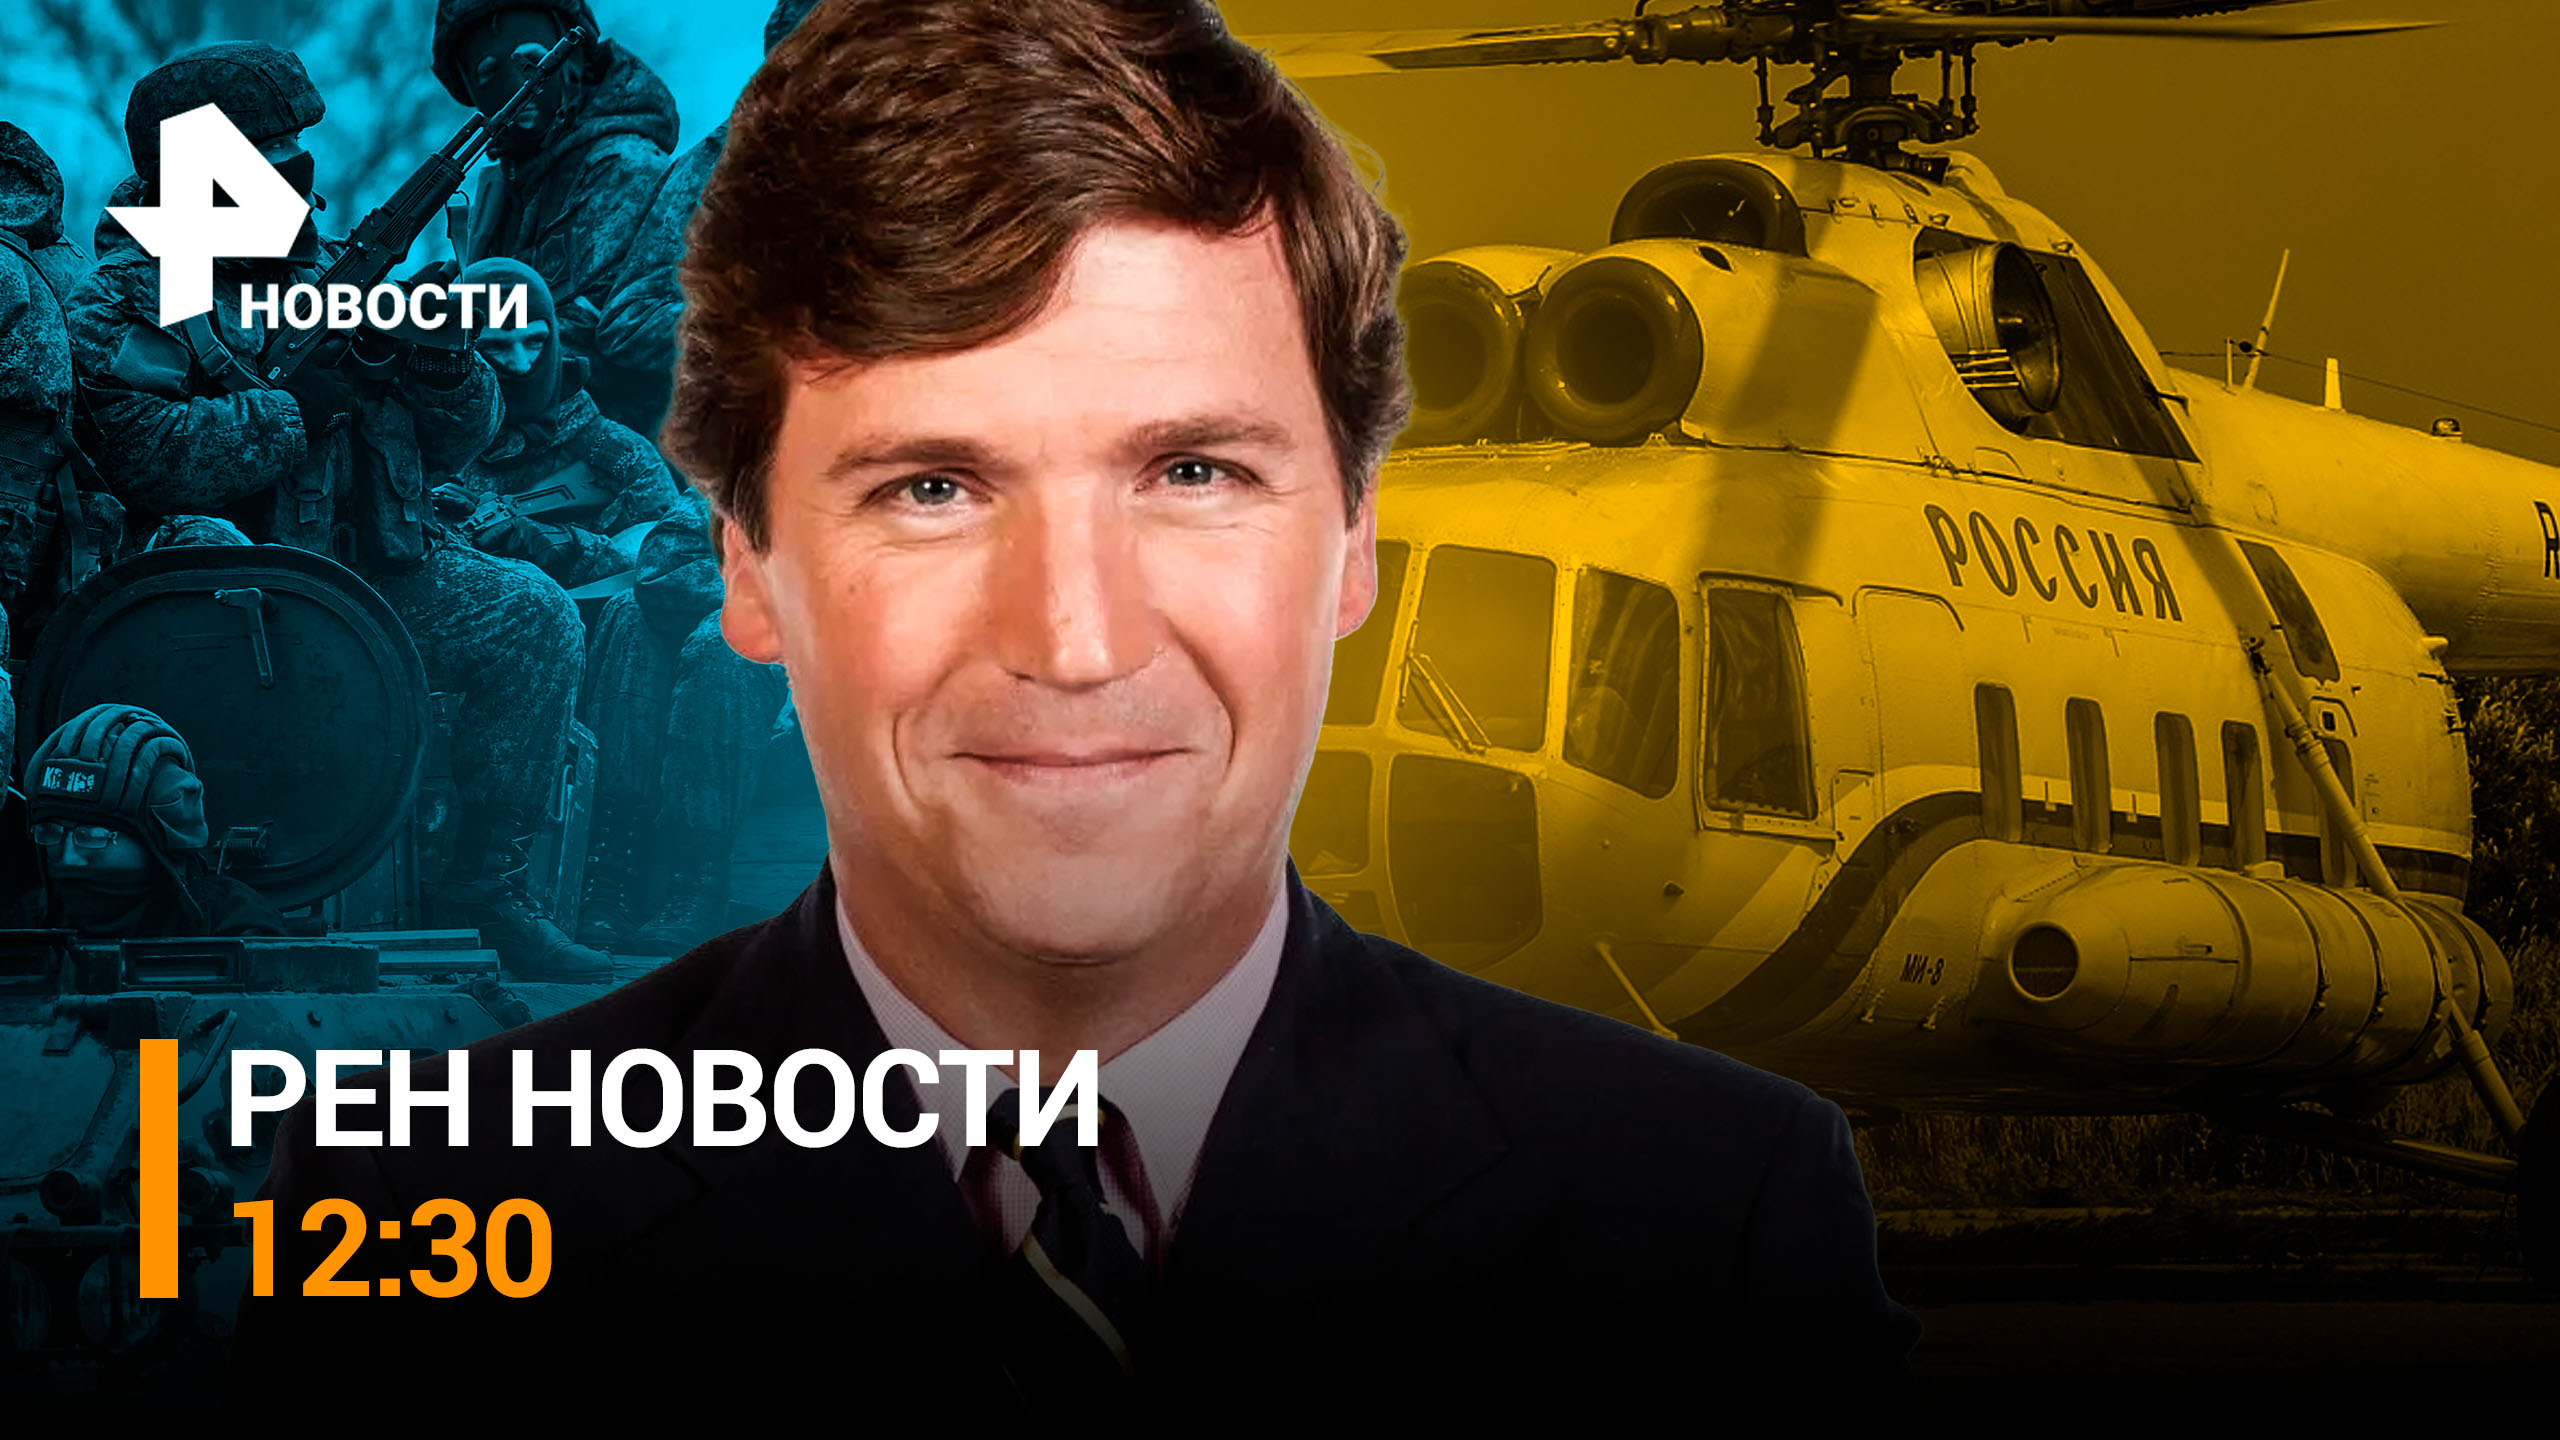 Водолазы ищут тела с упавшего Ми-8. Журналист из США рассказал о целях визита в Россию / РЕН НОВОСТИ